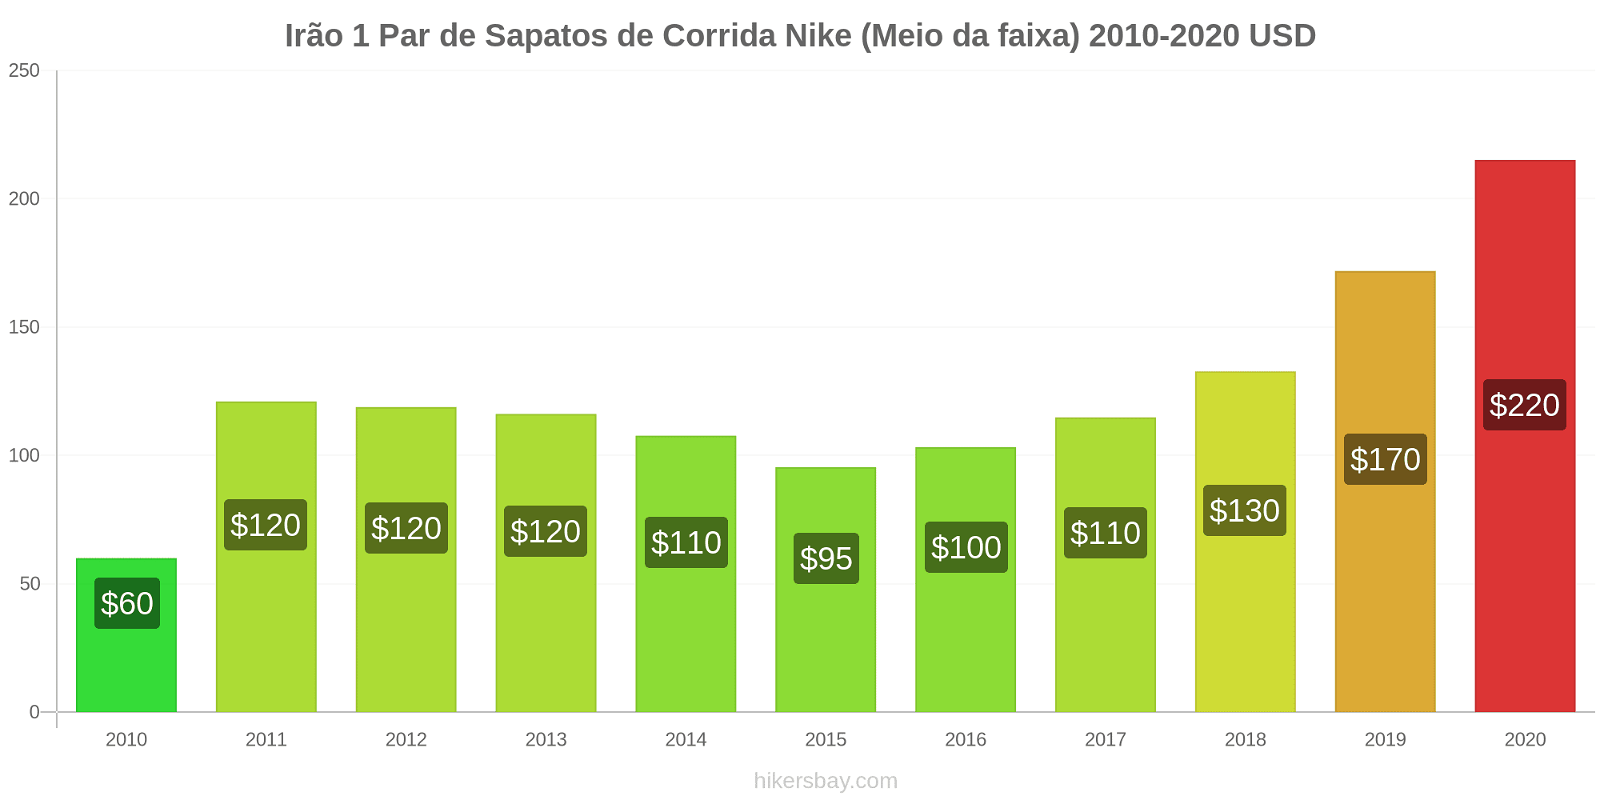 Irão variação de preço 1 par de tênis Nike (mid-range) hikersbay.com